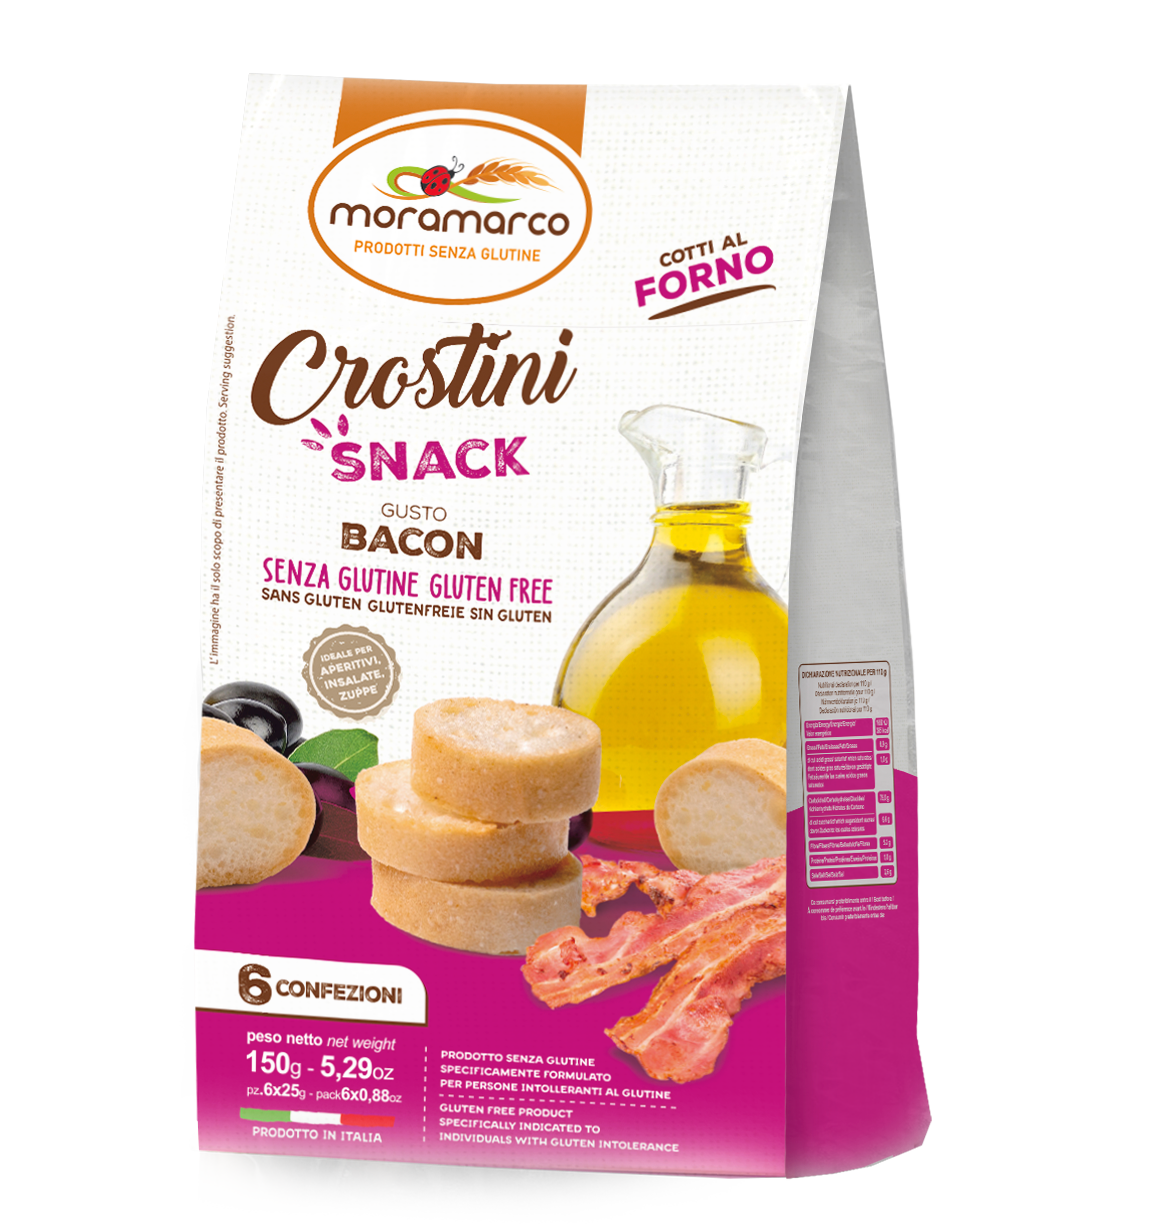 Crostini Snack gusto Bacon - Moramarco